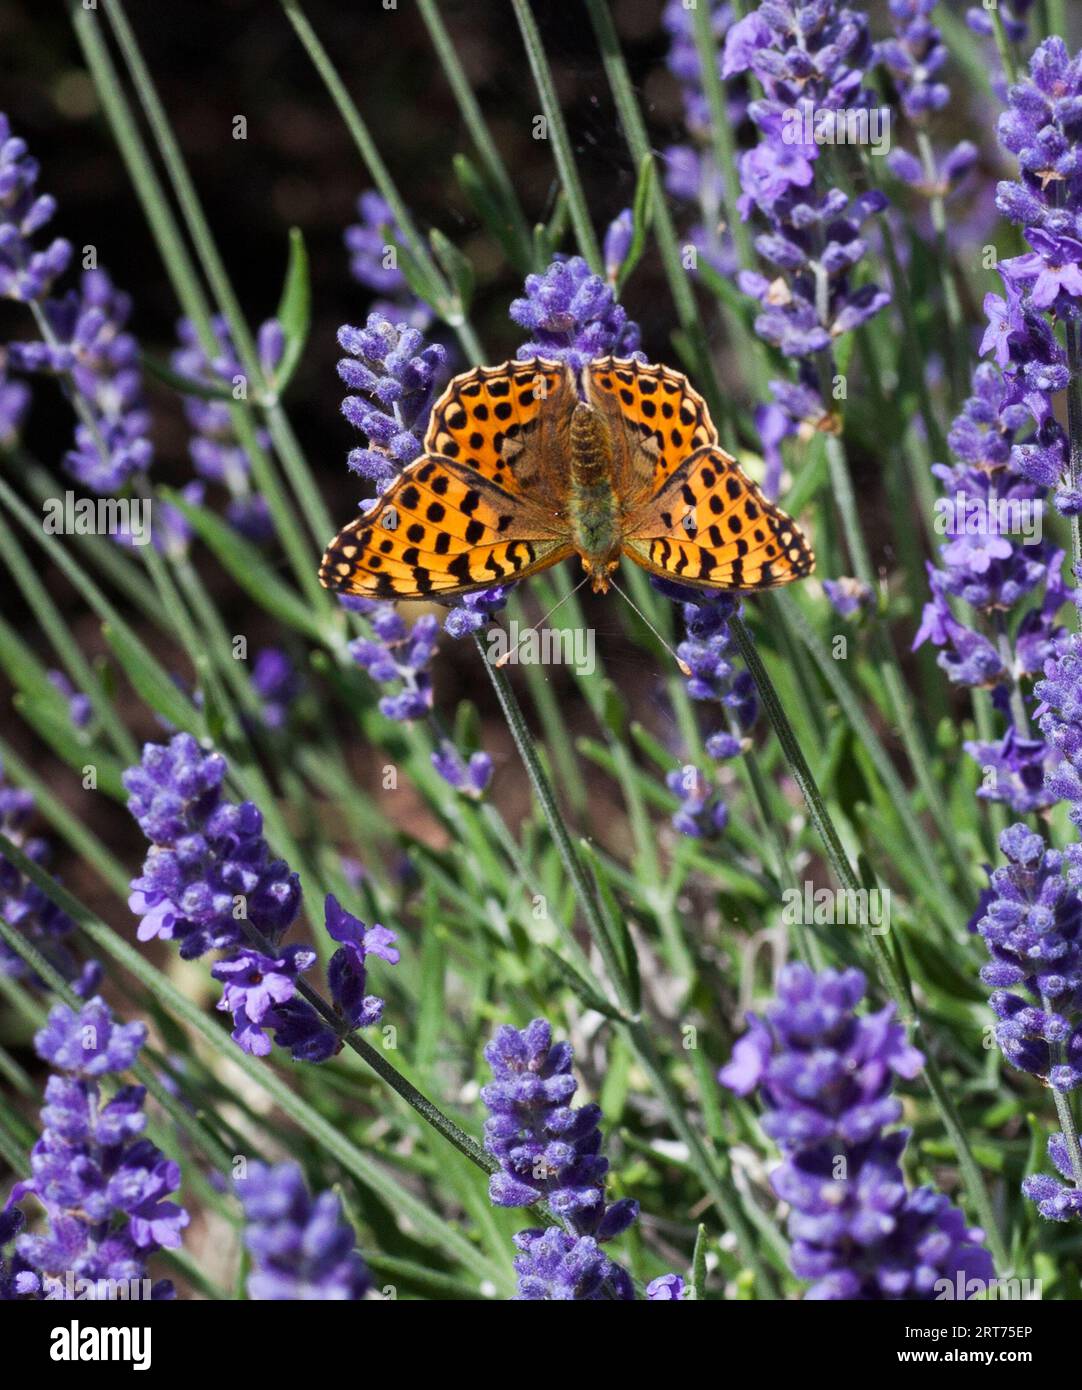 KÖNIGIN VON SPANIEN FRITILLÄRIN Issoria Lathonia Schmetterling Stockfoto